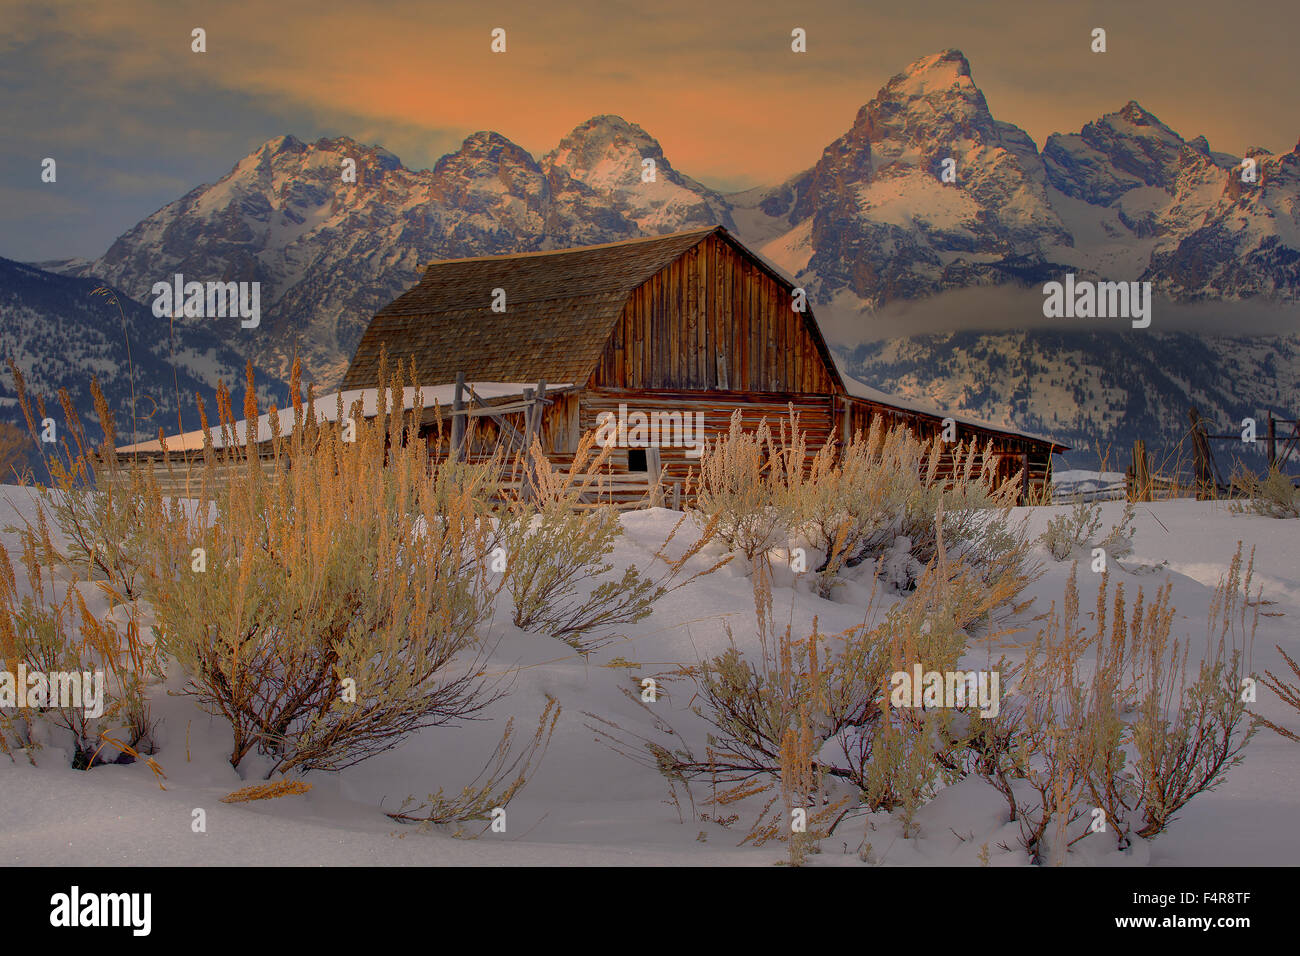 USA, United States, America, Wyoming, Grand Teton, Rockies, Rocky Mountains, National Park, Jackson Hole, Mount Moran, Oxbow Ben Stock Photo